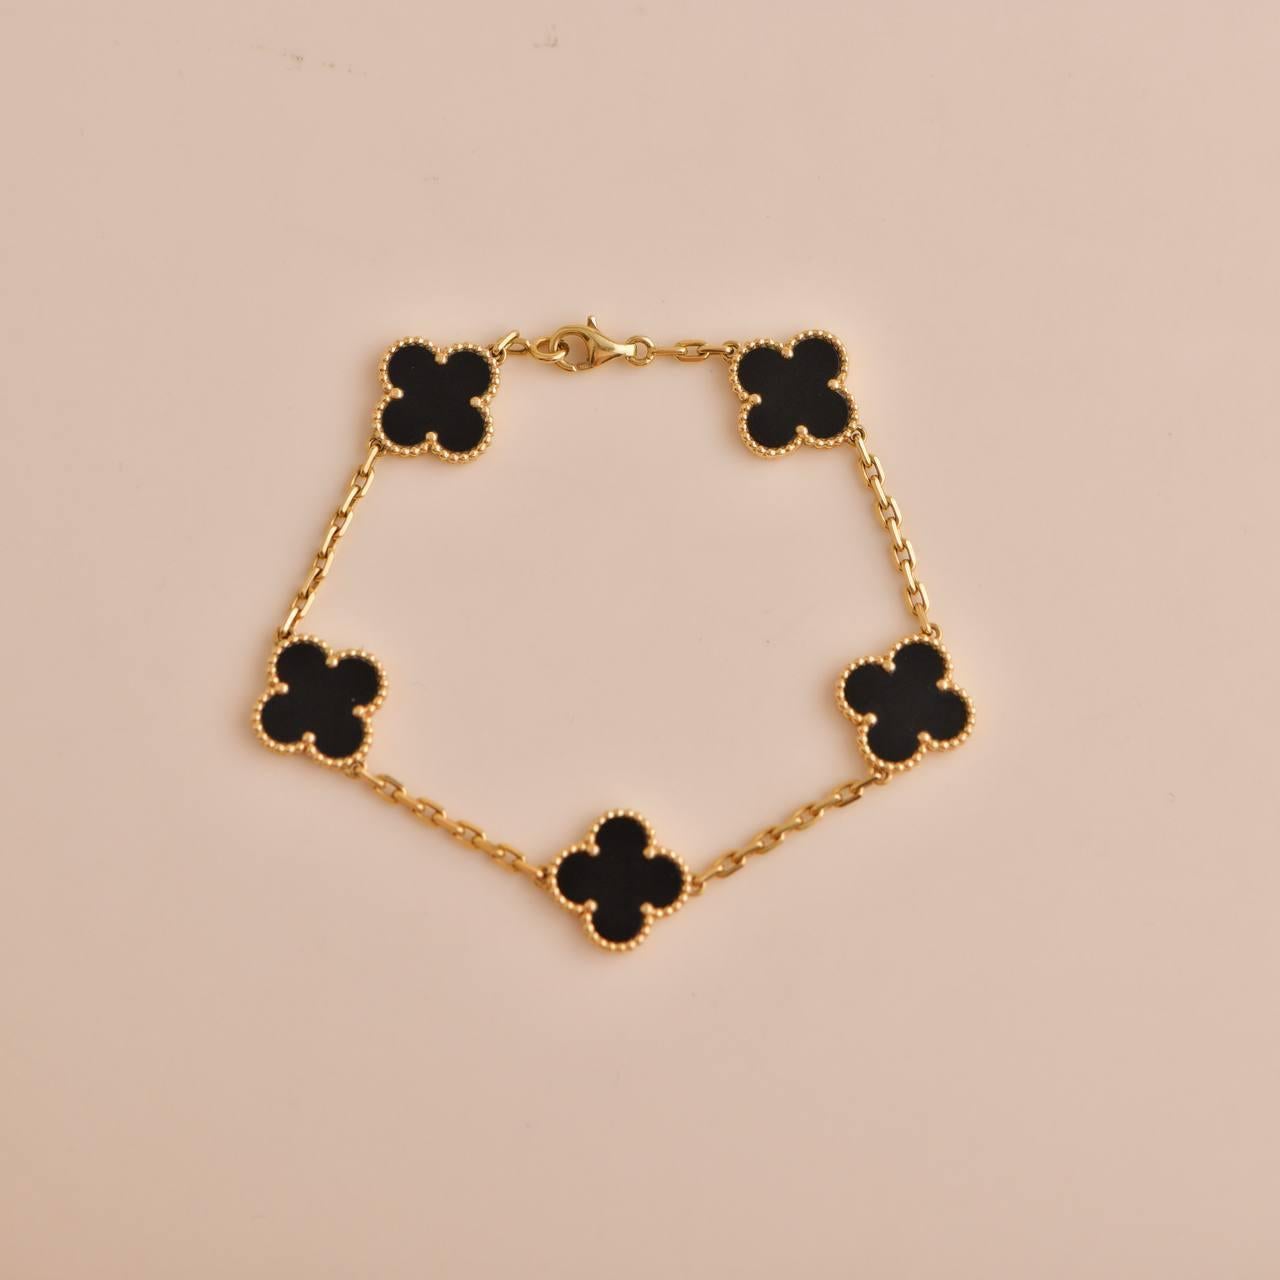 Uncut Van Cleef & Arpels Black Onyx Vintage Alhambra Yellow Gold Bracelet